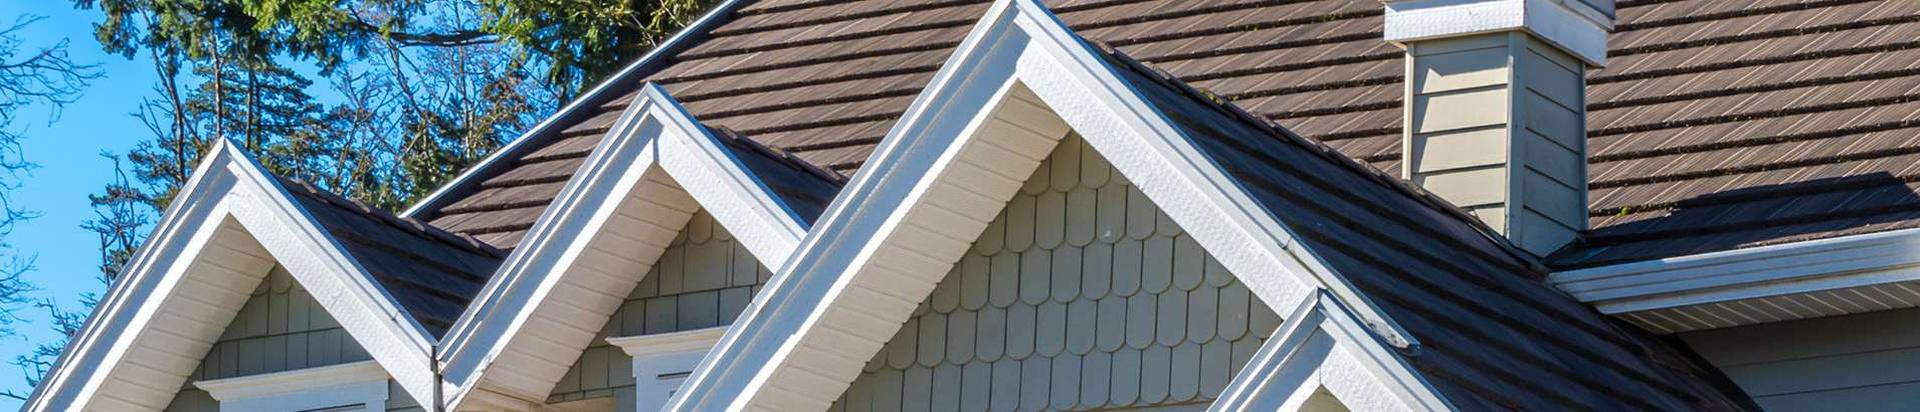 Kvaliteetsed katusetööd, sealhulgas viilkatuste renoveerimine, katuseakende, vihmaveesüsteemide ja turvatoodete paigaldamine